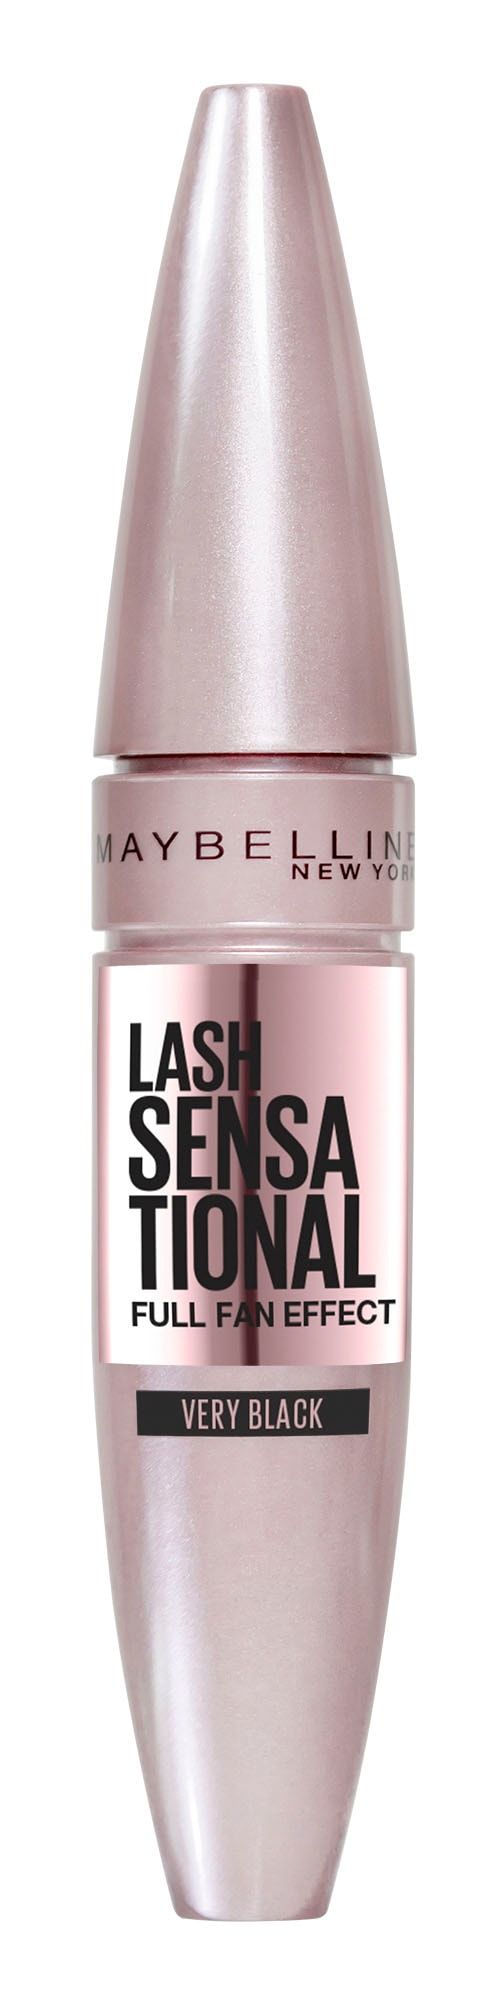 MAYBELLINE NEW New Mascara Wimperntusche »Maybelline Lash Sensational YORK Mascara«, York kaufen online